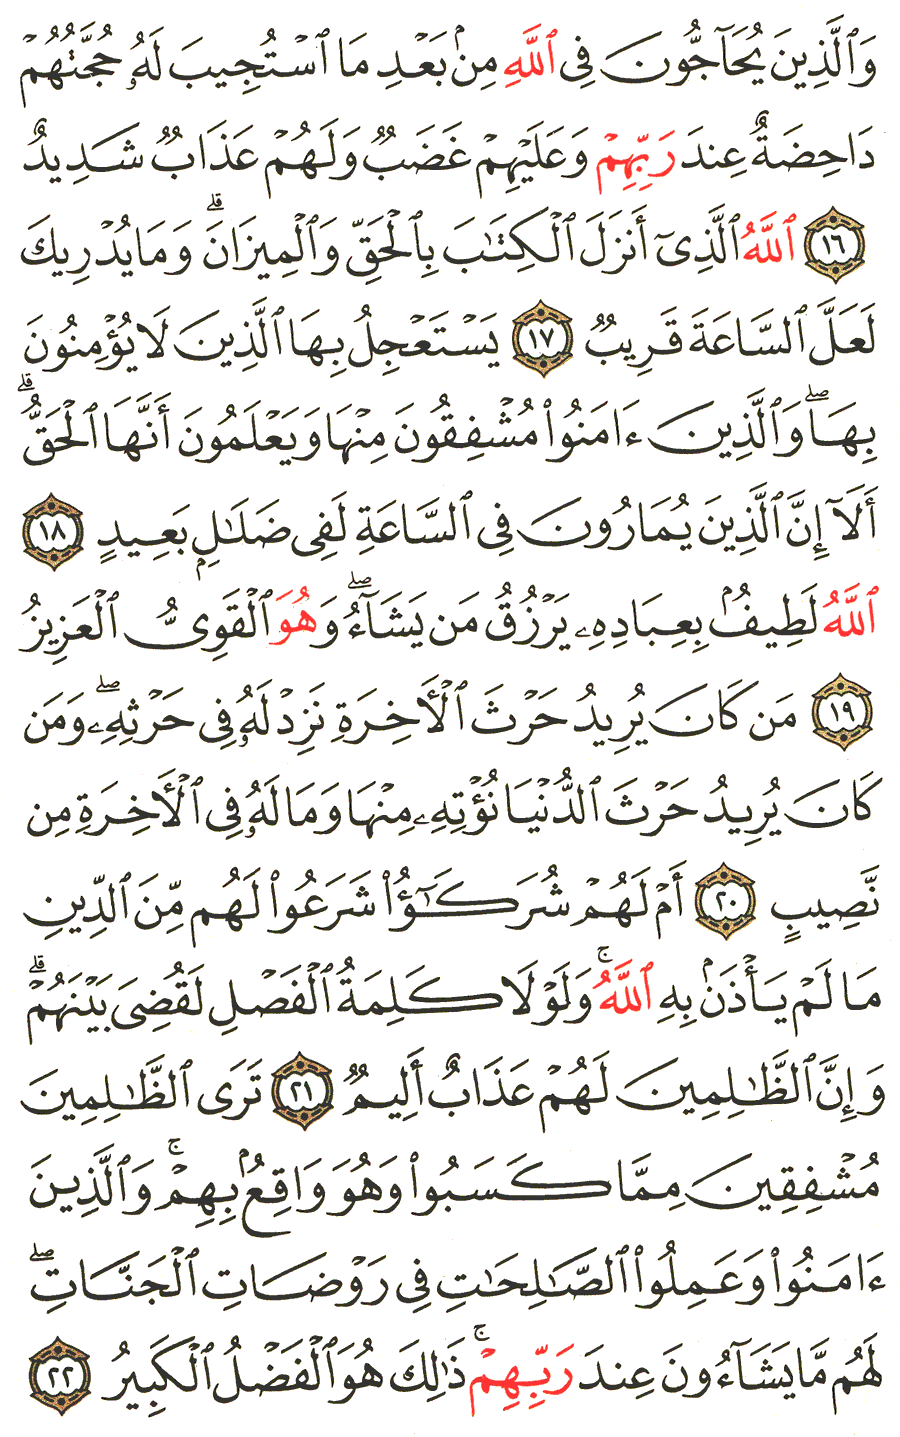 الصفحة 485 من القرآن الكريم